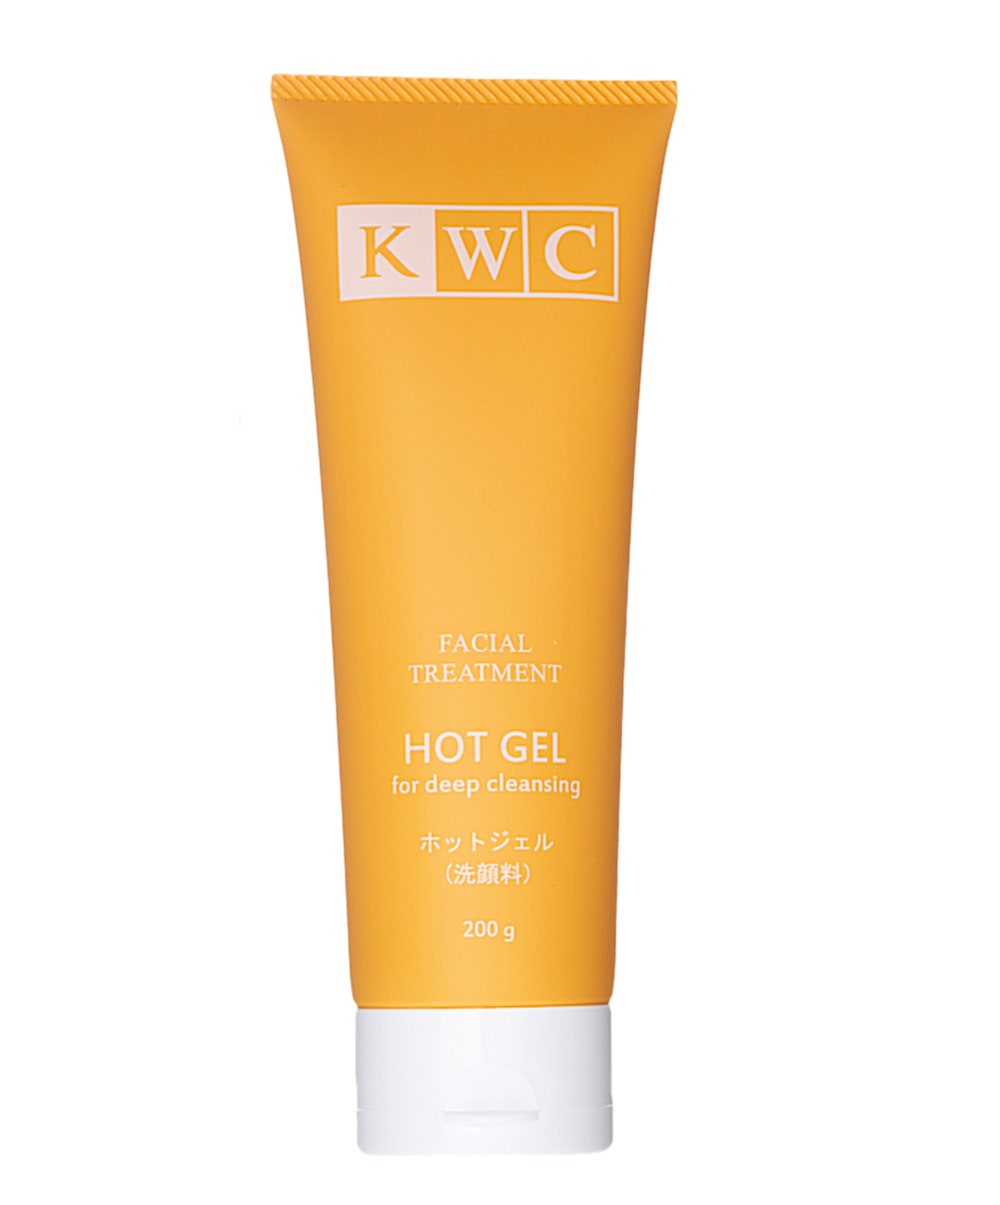 Термогель для глубокого очищения кожи лица Facial Treatment Hot Gel for Deep Cleansing 2950 руб. KWC.